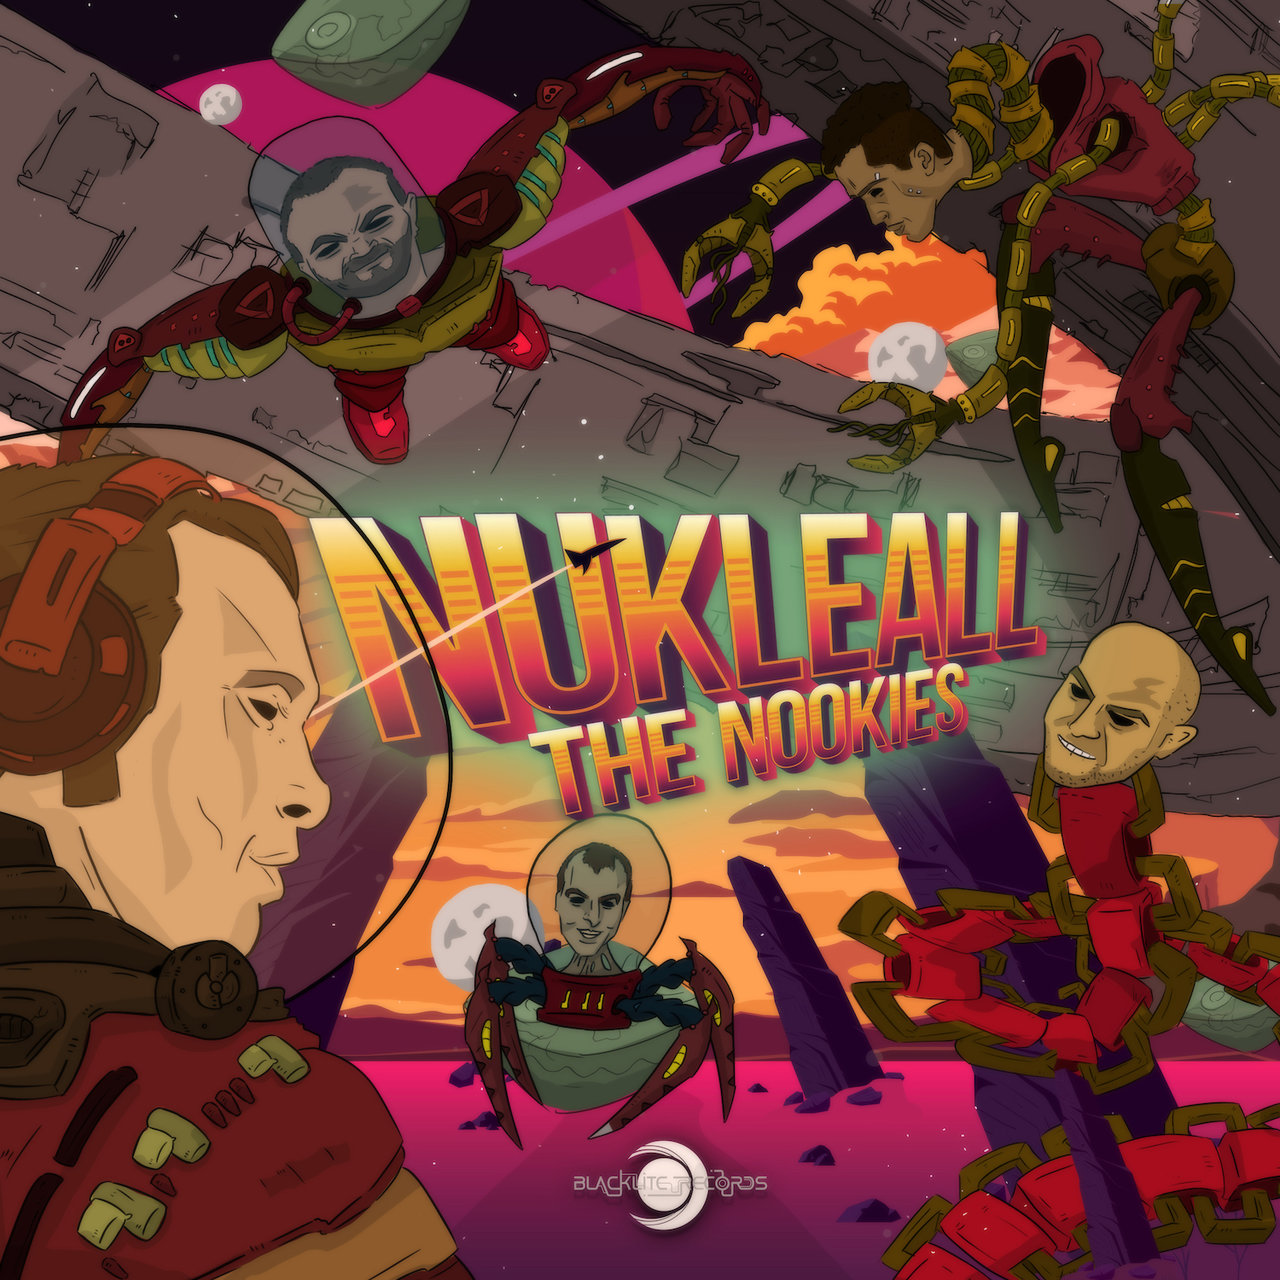 The Nookies - Nukleall